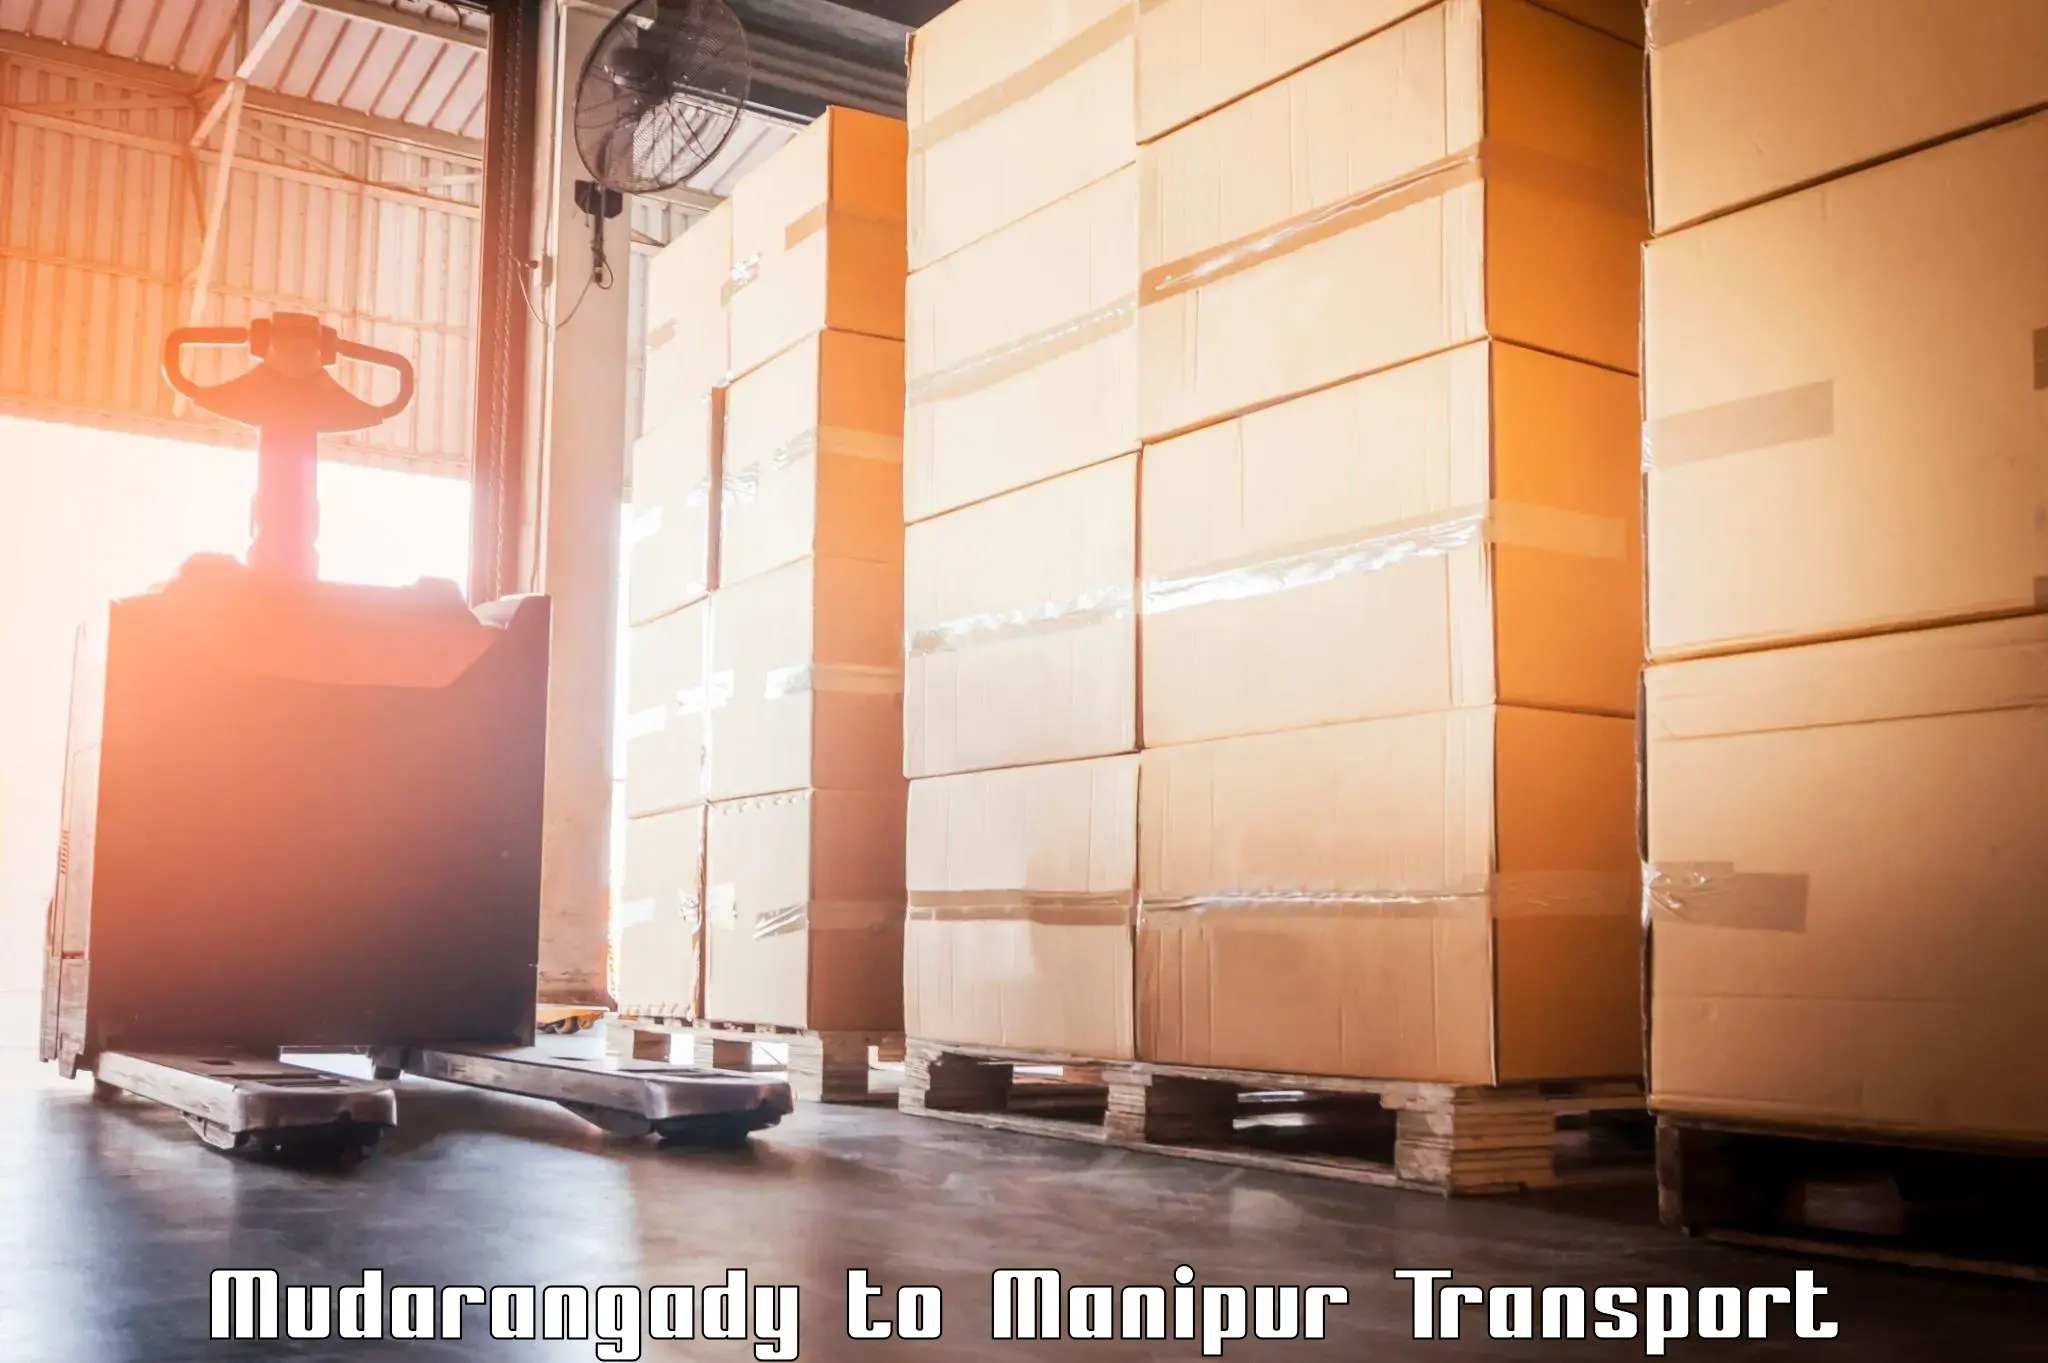 Online transport booking Mudarangady to Kangpokpi